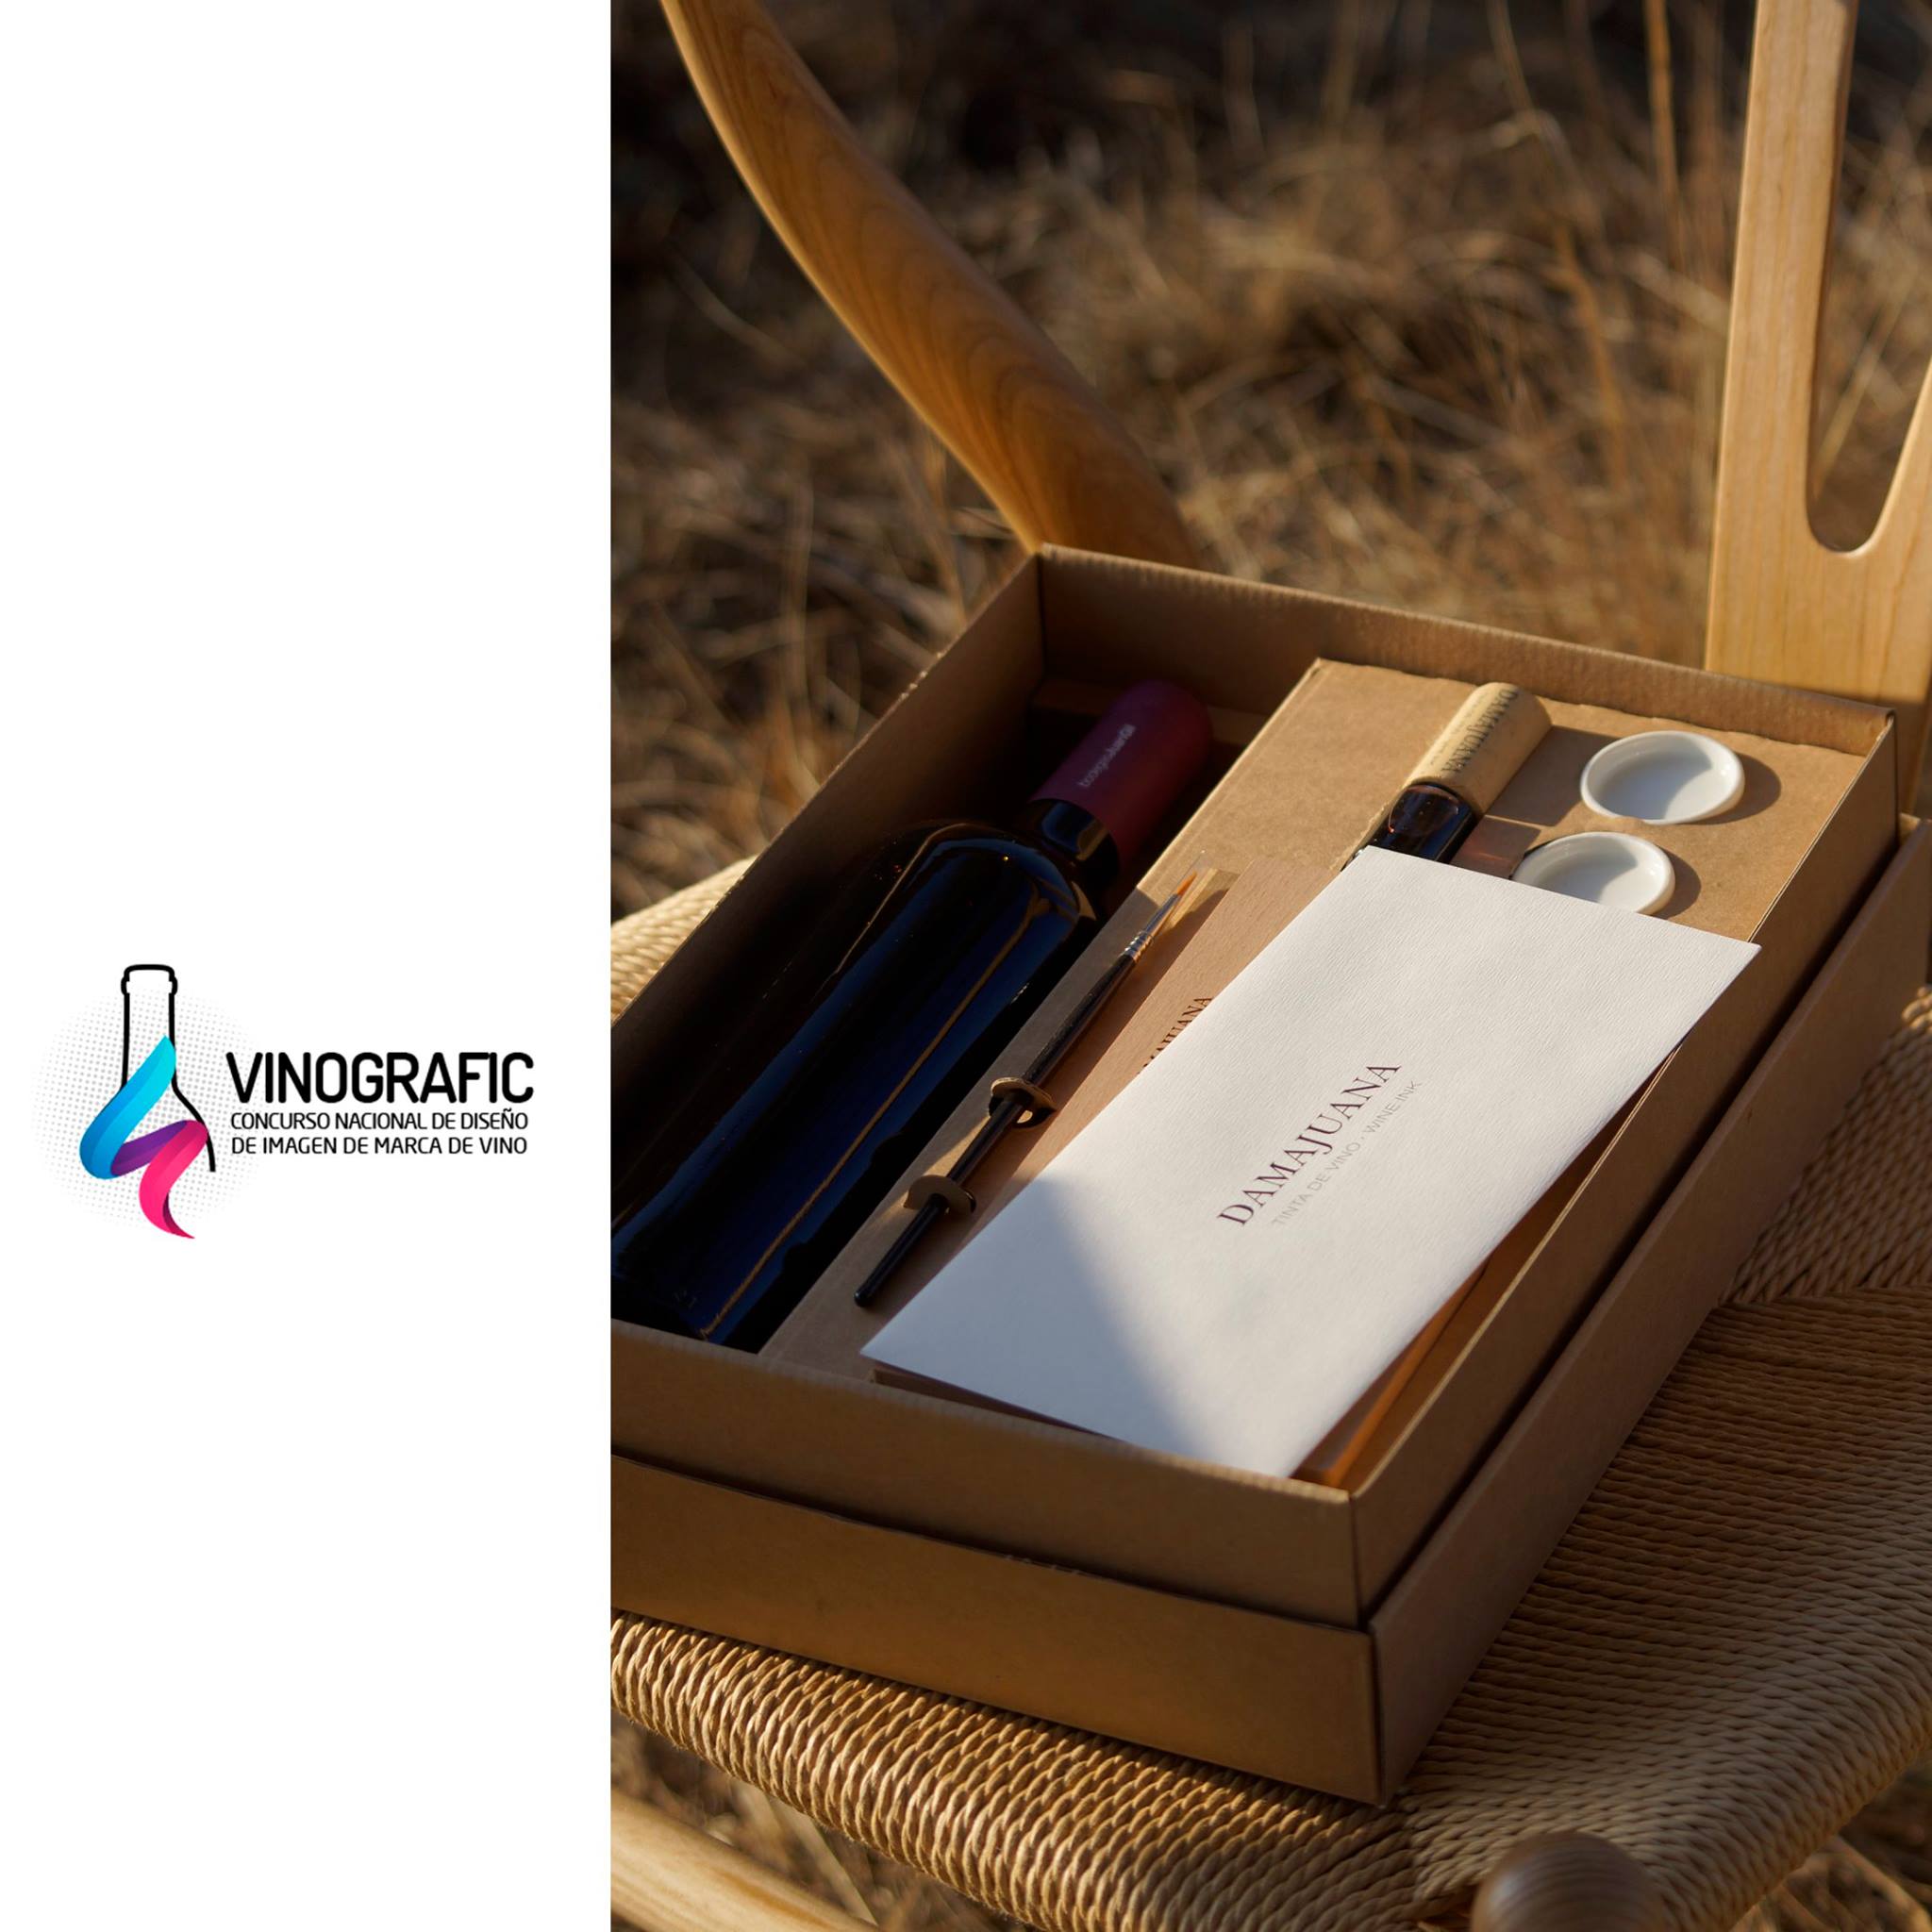 Vinografic 2019 premia la caja expositora DamaJuana como la mejor Imagen de Producto